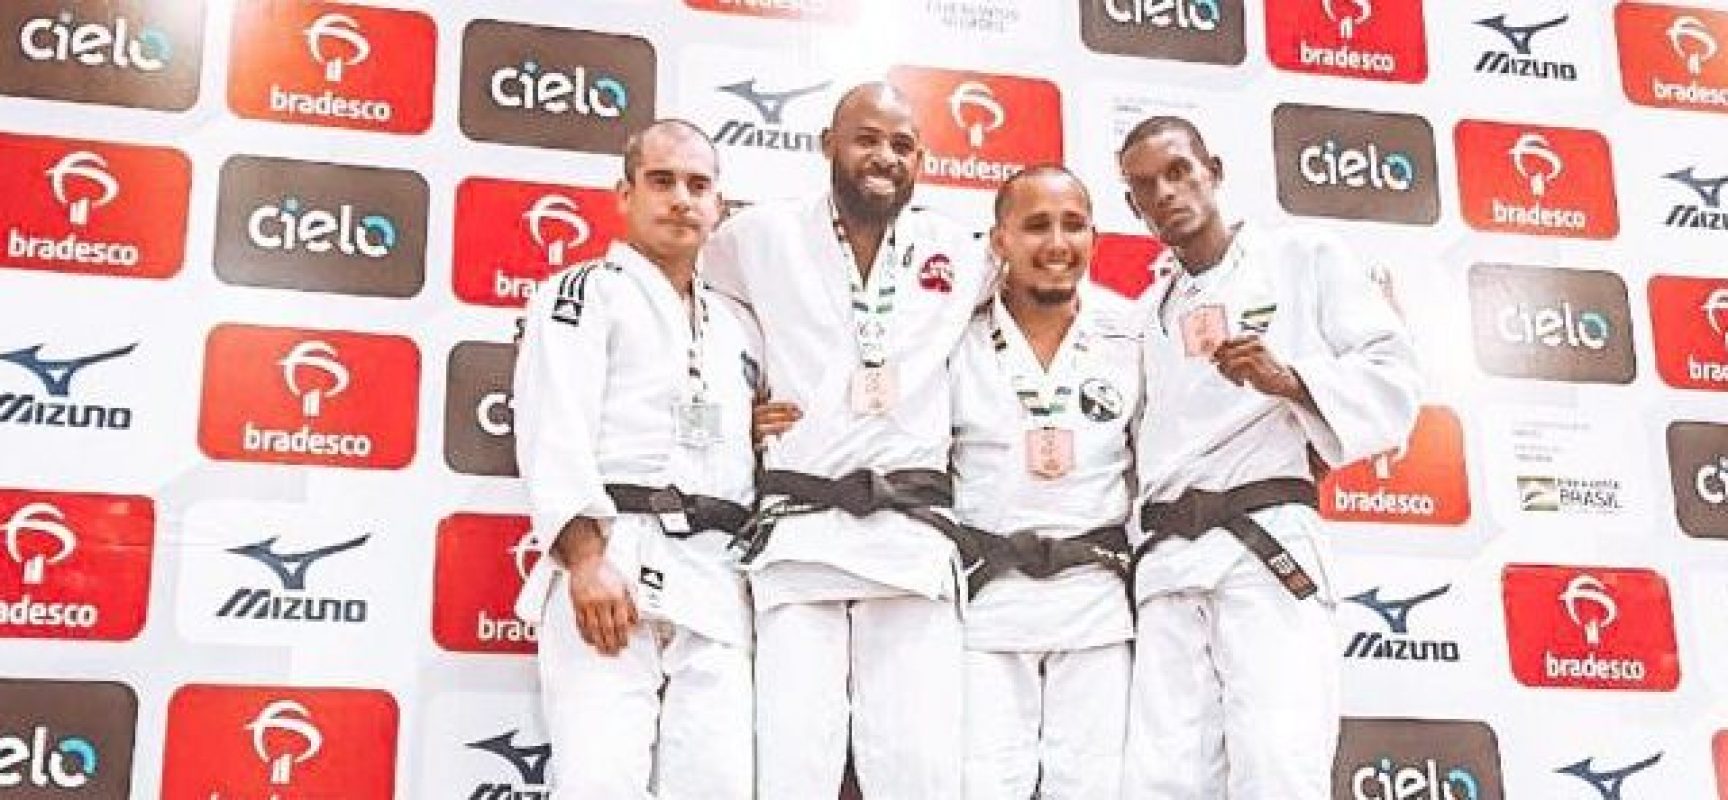 Sem apoio oficial, judoca mantém ranking e traz medalha de bronze para Ilhéus